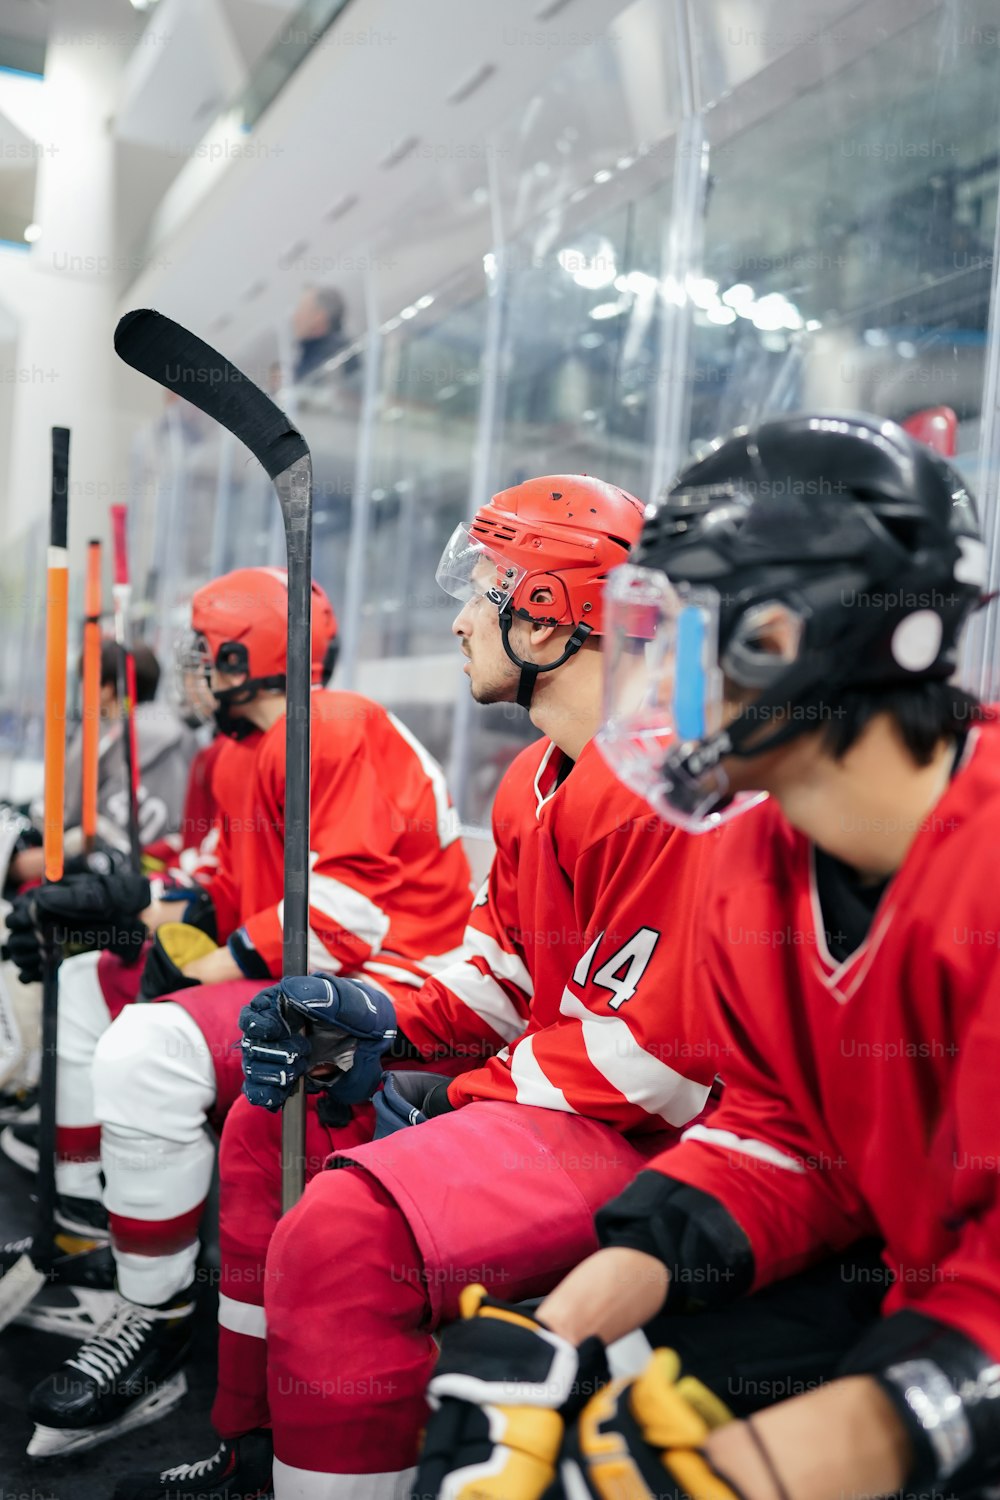 Un grupo de jugadores de hockey sentados uno al lado del otro